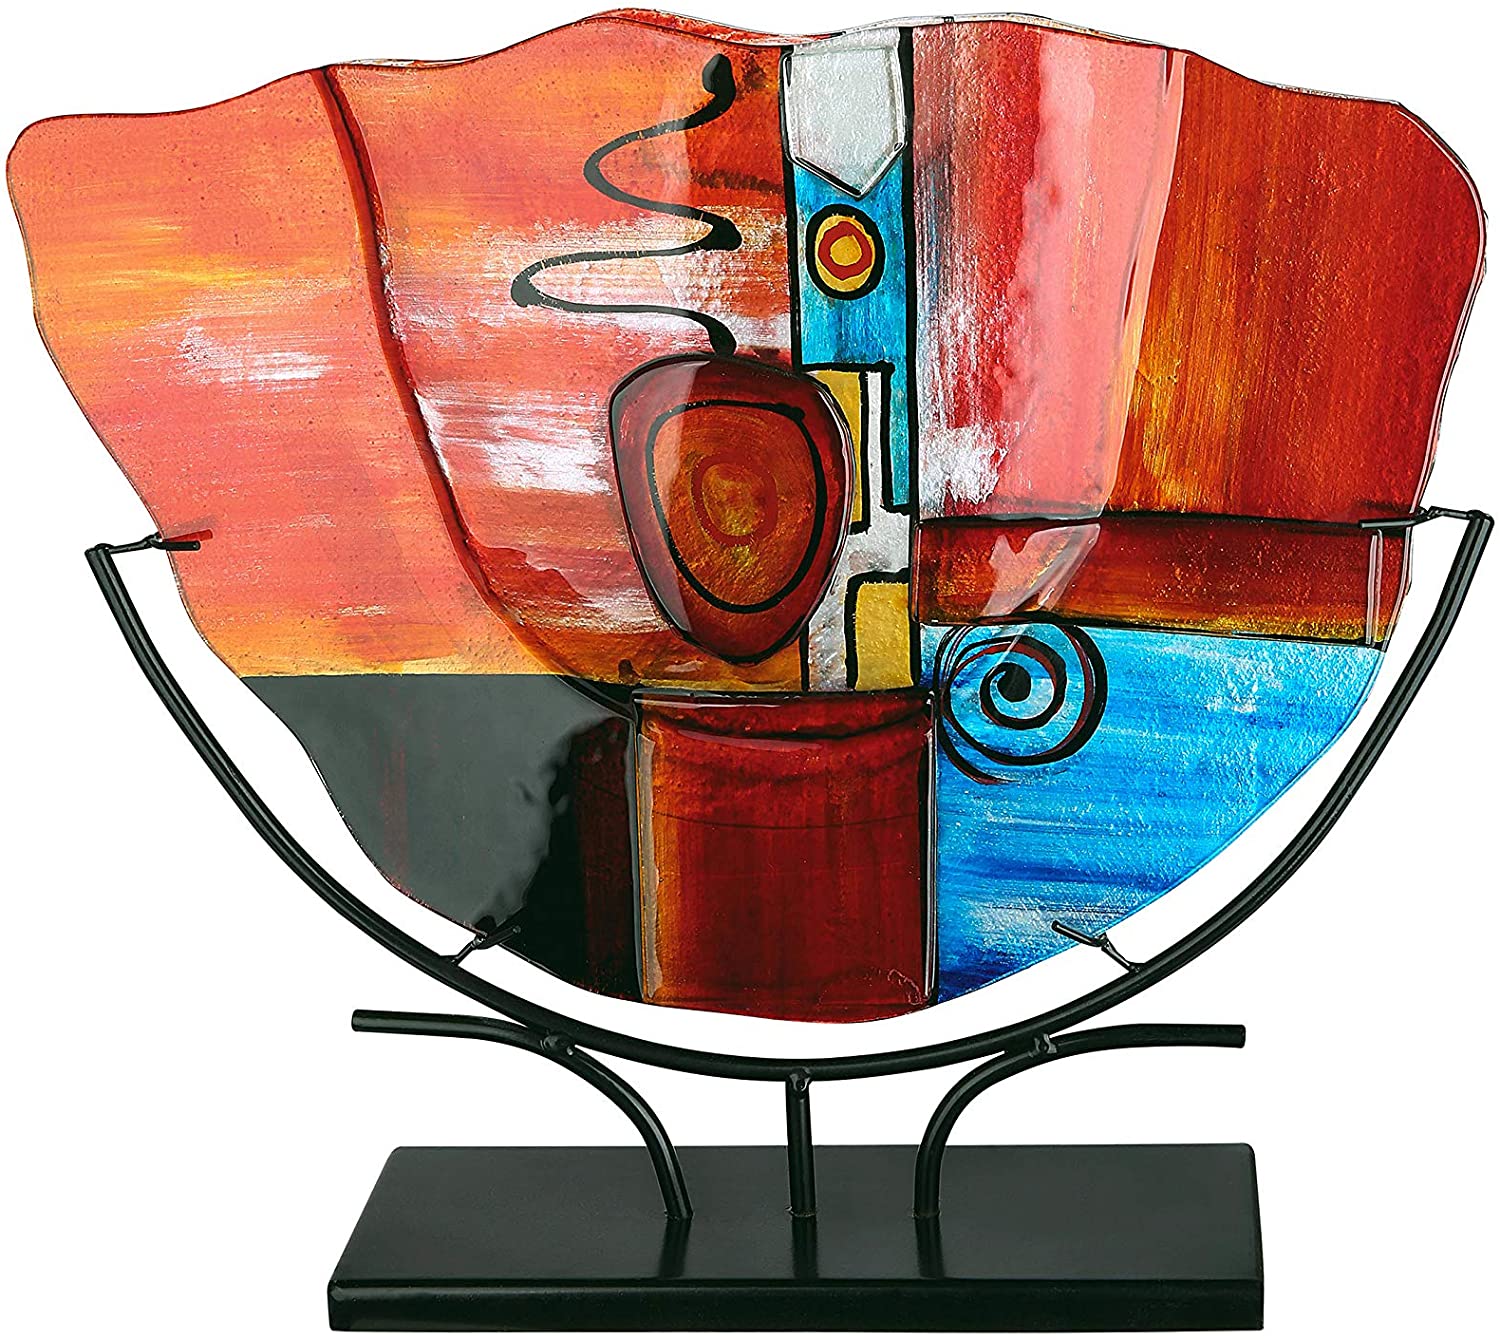 GILDE GLAS art Vase - Gifts for Women - Handmade Glass Height 31.5 cm